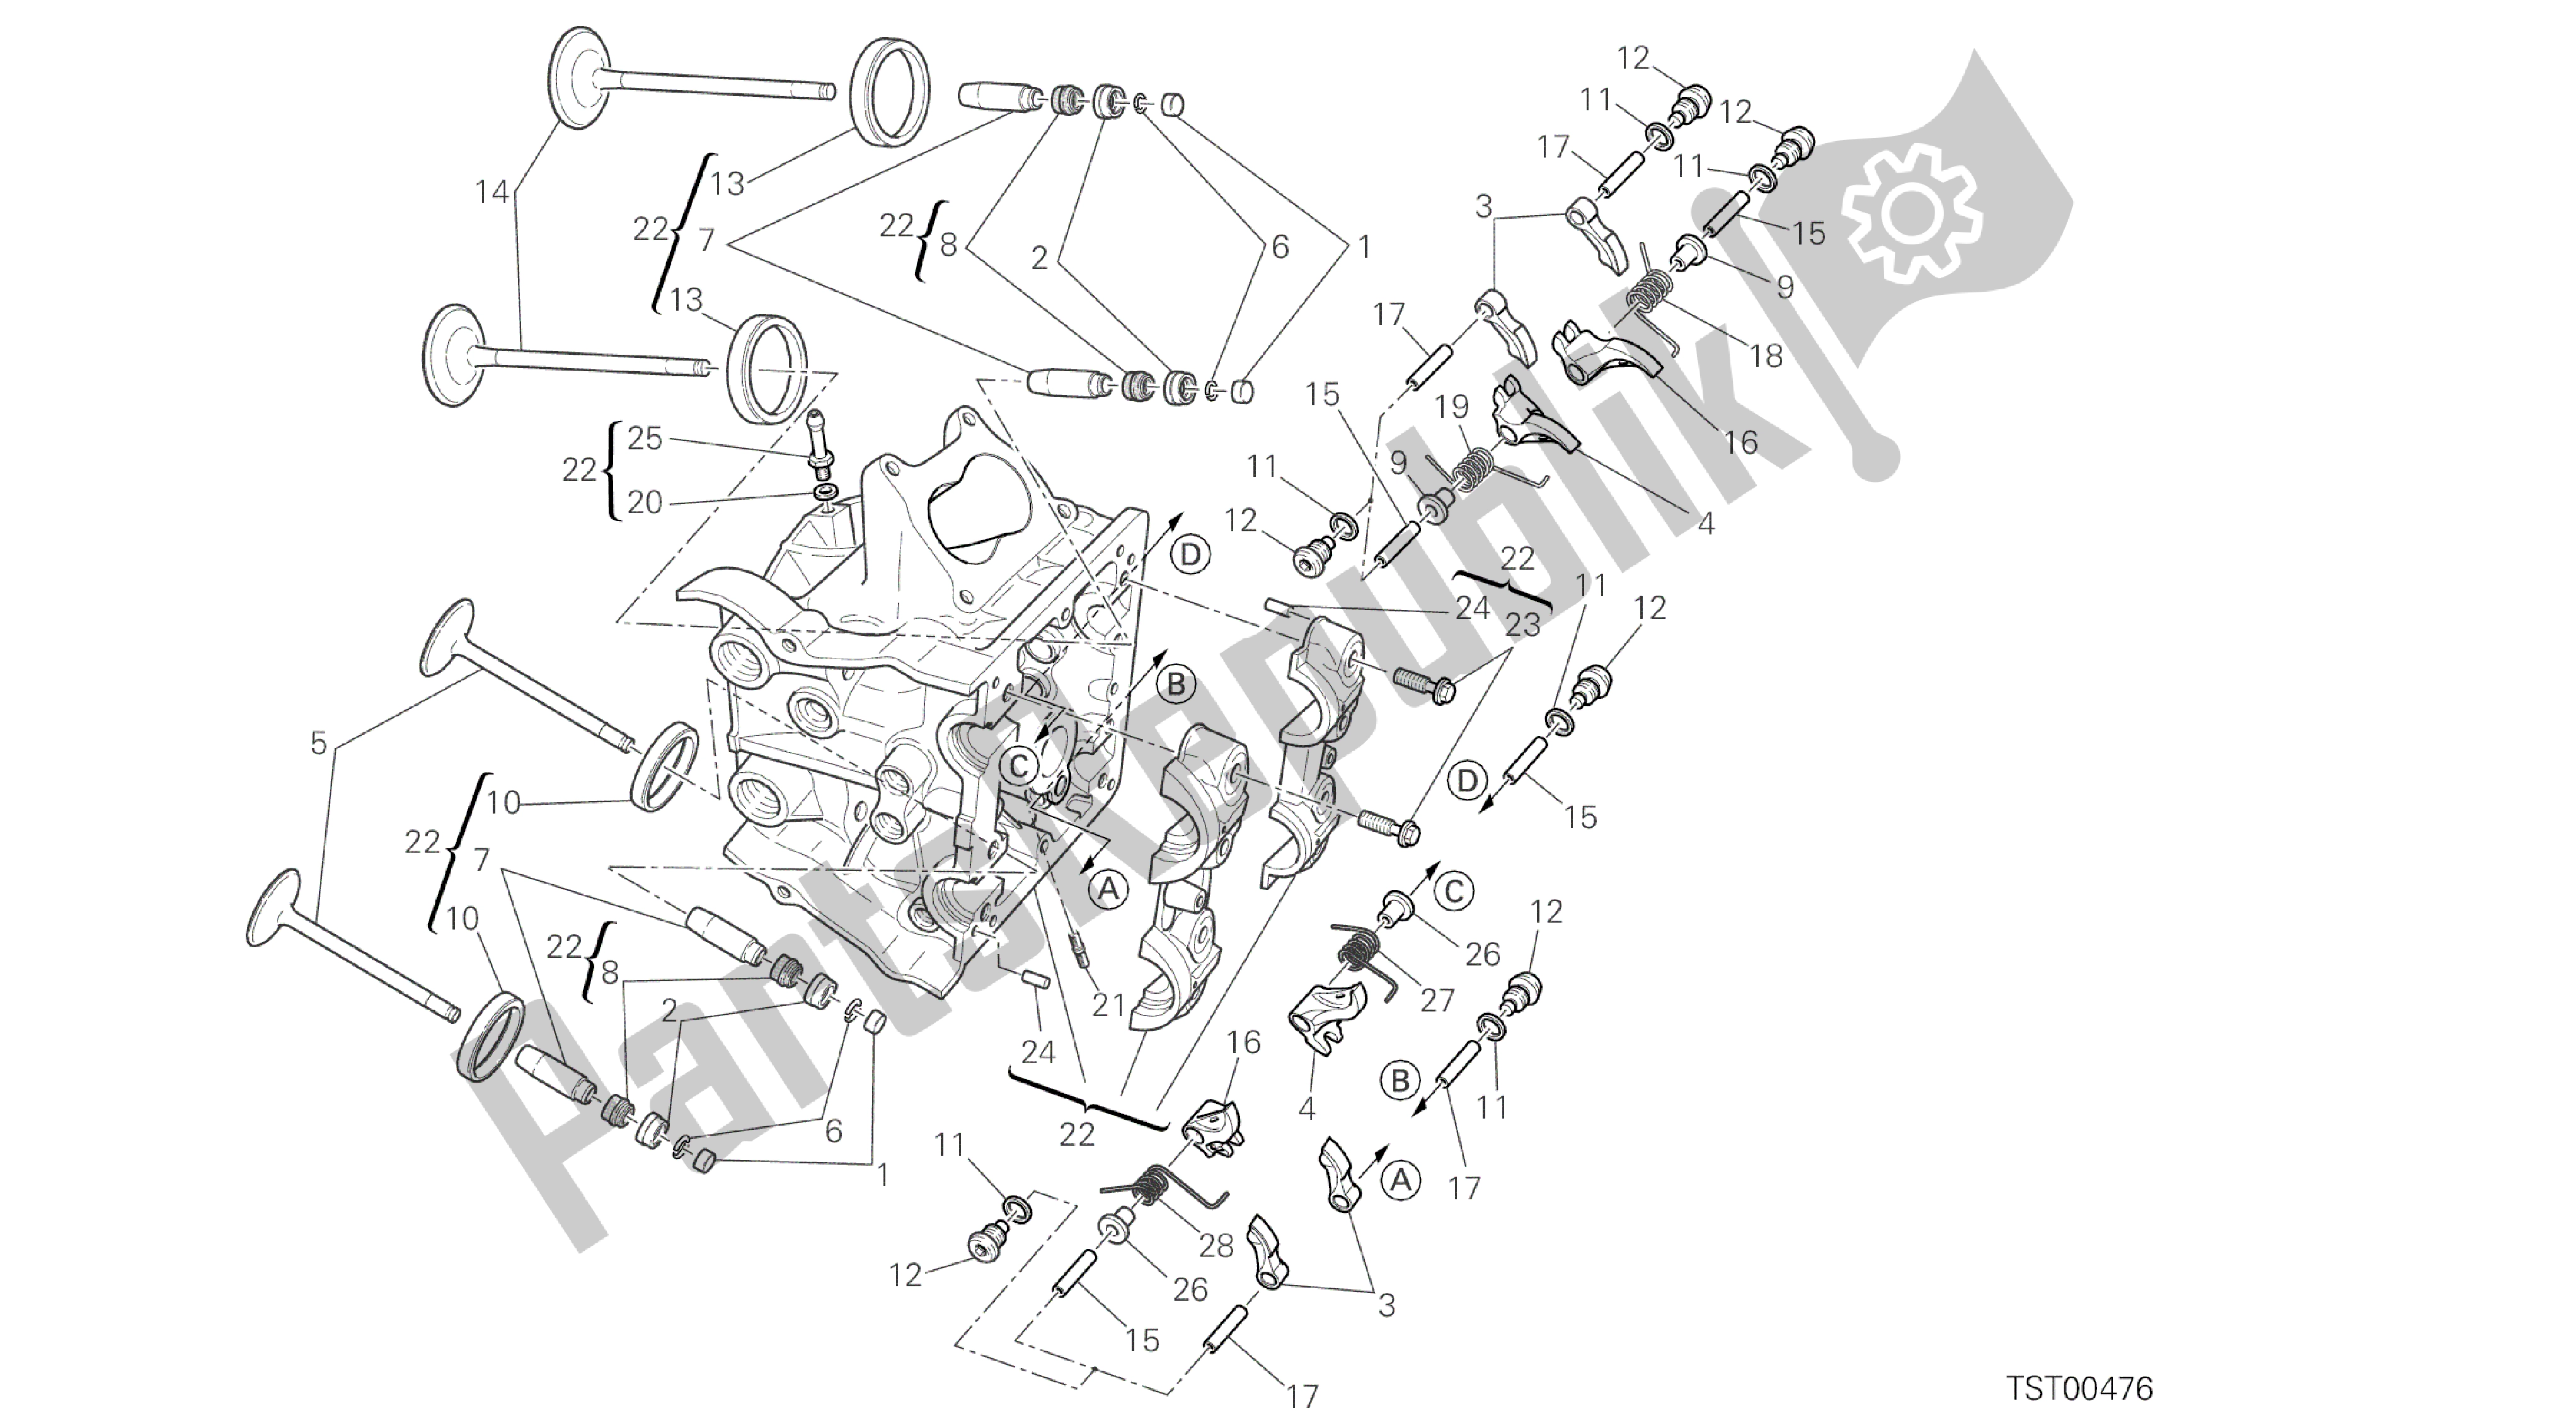 Tutte le parti per il Disegno 015 - Testata Orizzontale [mod: Ms1200st; Xst: Aus, Chn, Eur, Fra, Jap, Tha] Gruppo Motore del Ducati Multistrada S Touring 1200 2014